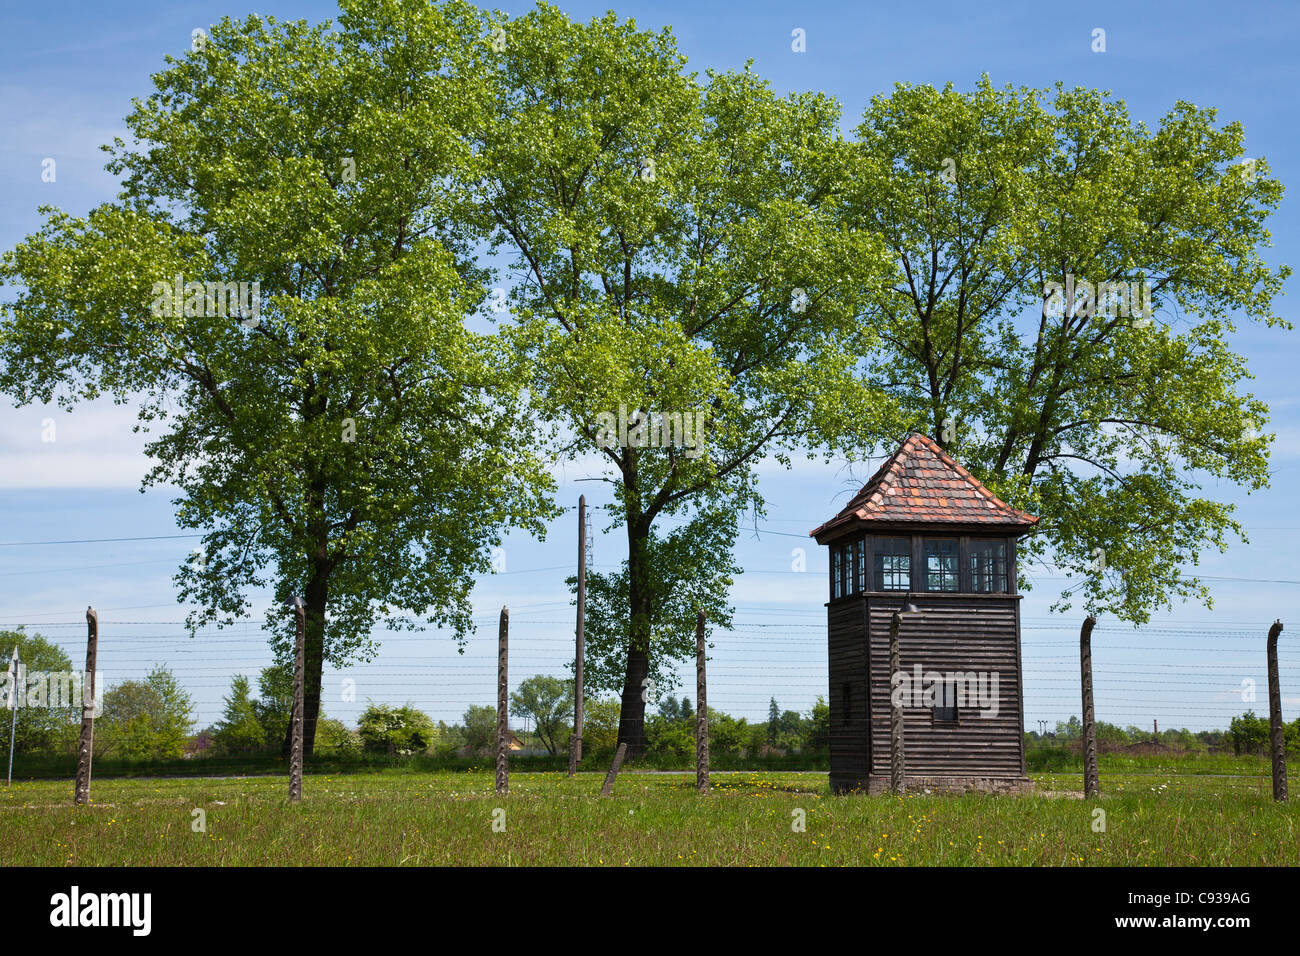 Polonia, Brzezinka, Auschwitz II - Birkenau. Una torre di avvistamento in legno vicino al filo spinato recinzioni perimetrali. Foto Stock